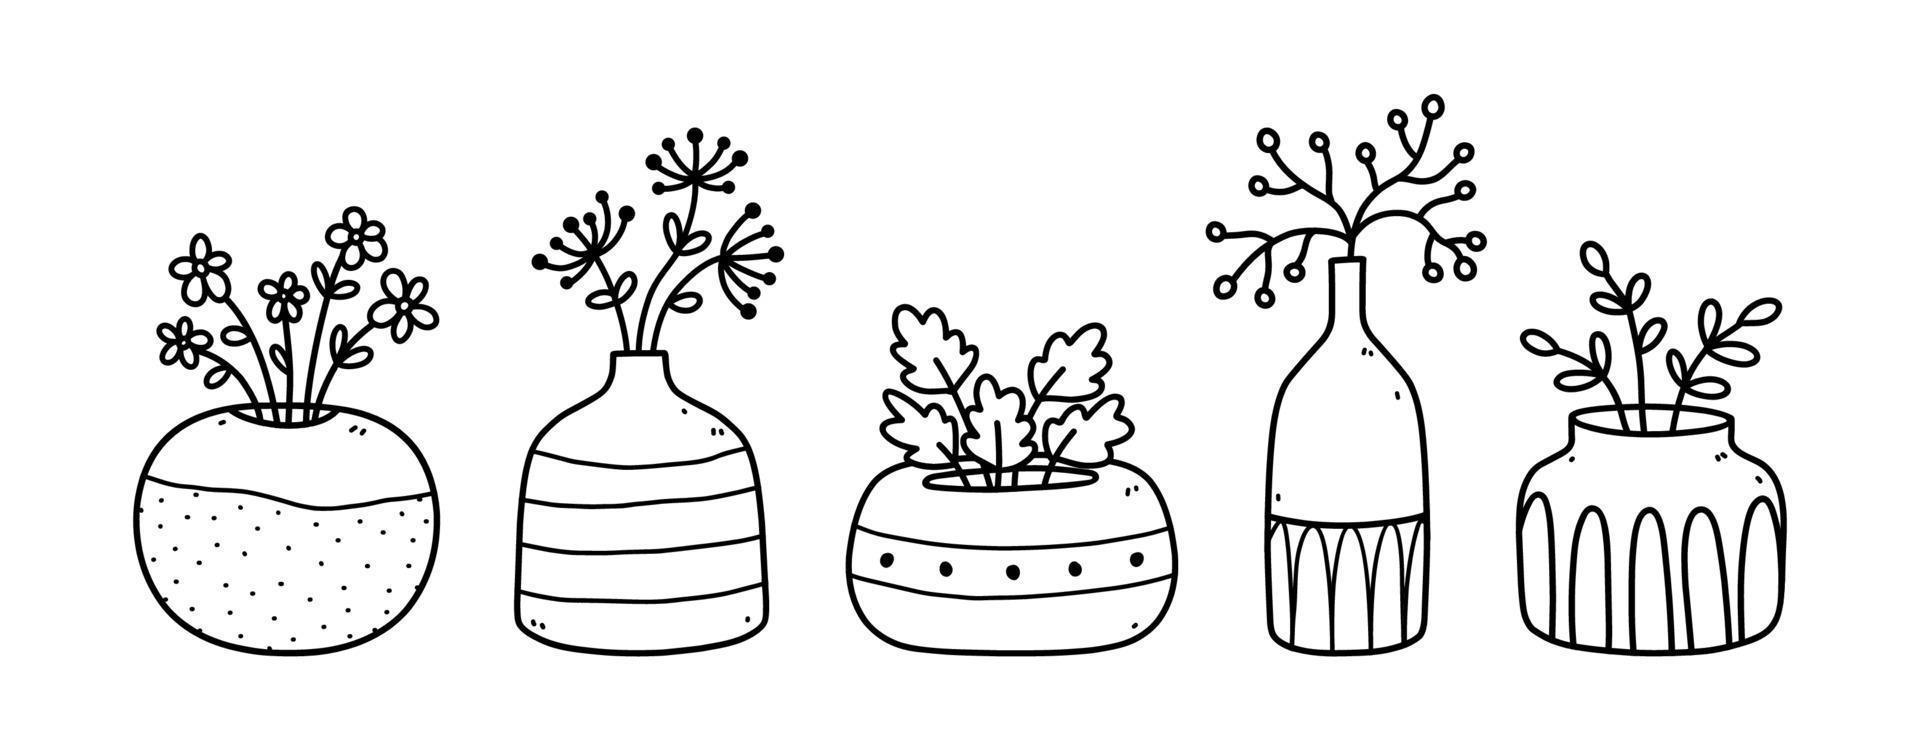 conjunto de flores fofas e galhos em vasos de cerâmica e potes isolados no fundo branco. ilustração vetorial desenhada à mão em estilo doodle. perfeito para cartões, decorações, logotipo. vetor